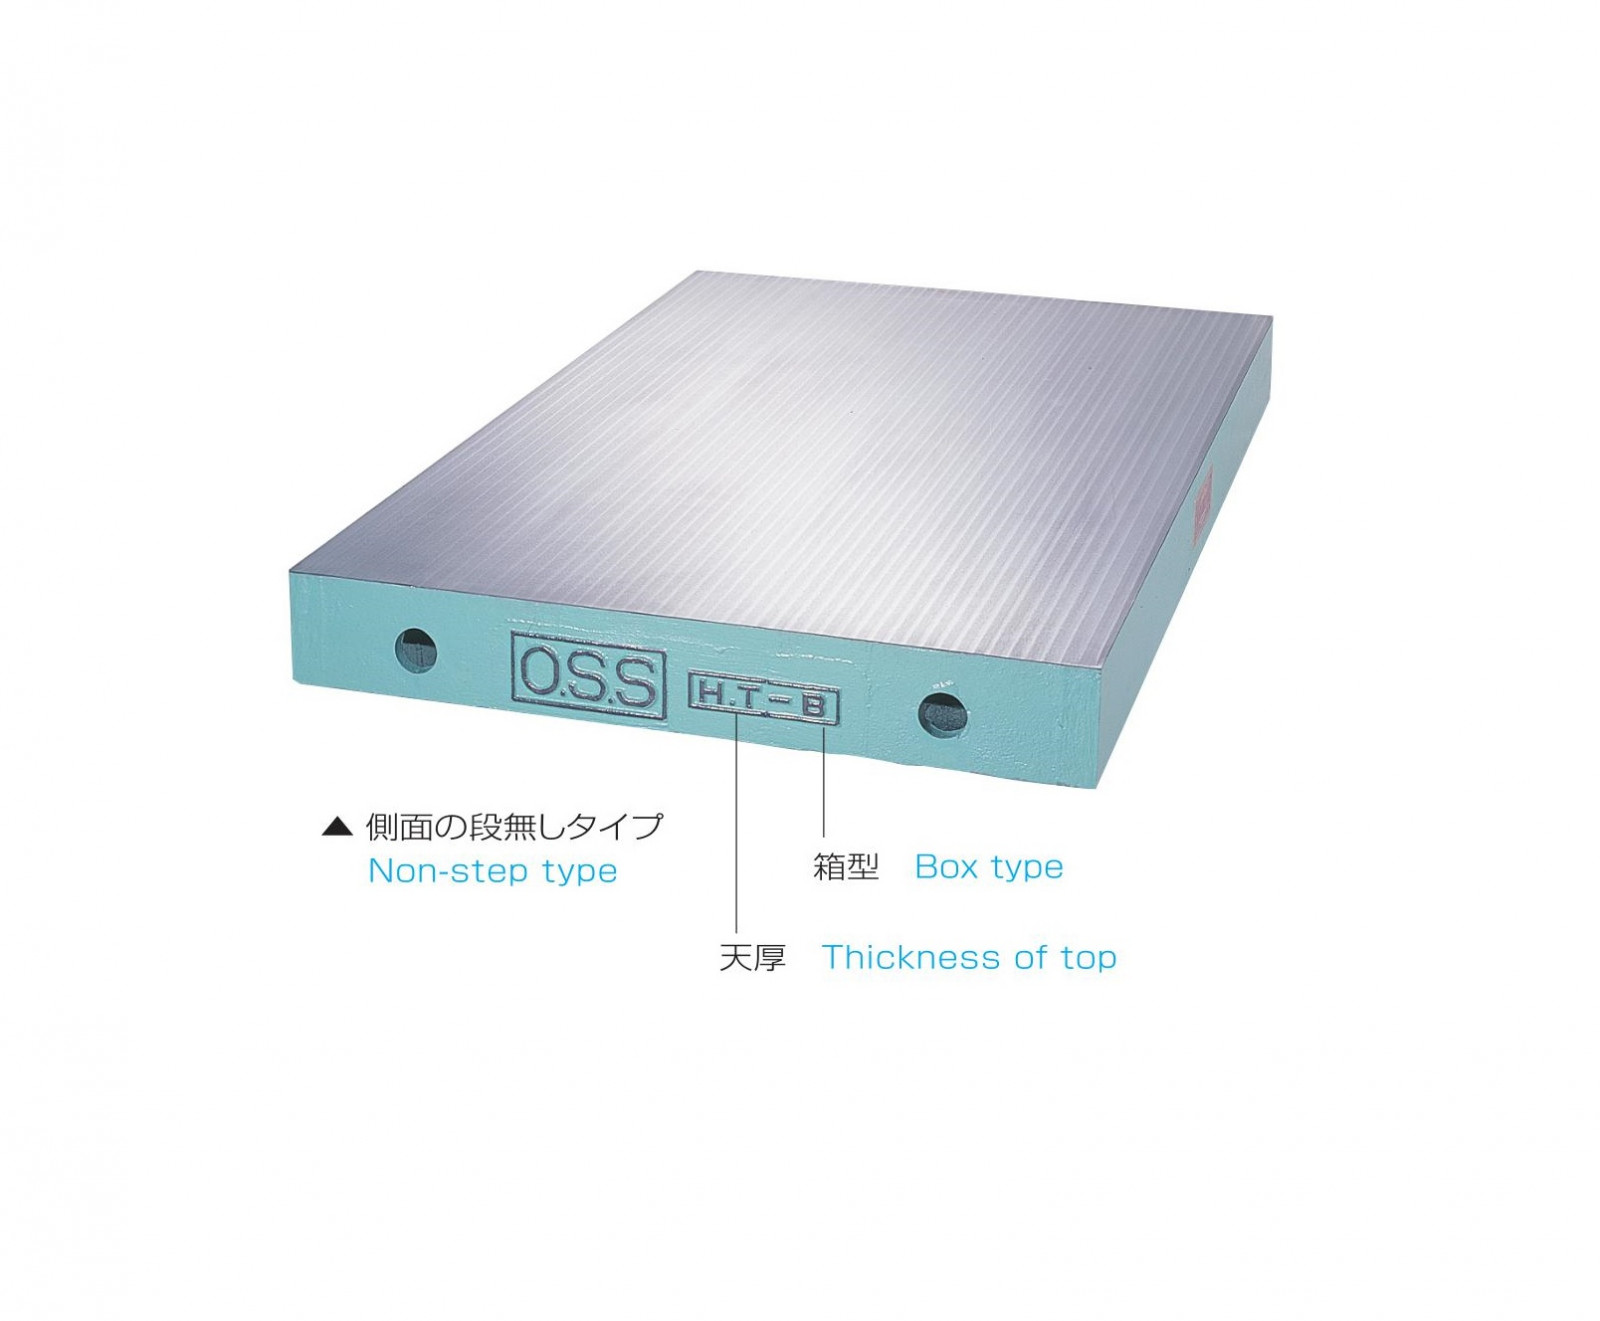 定盤 箱型鈑金用定盤 OS-107 | 製品詳細 | 大西測定株式会社